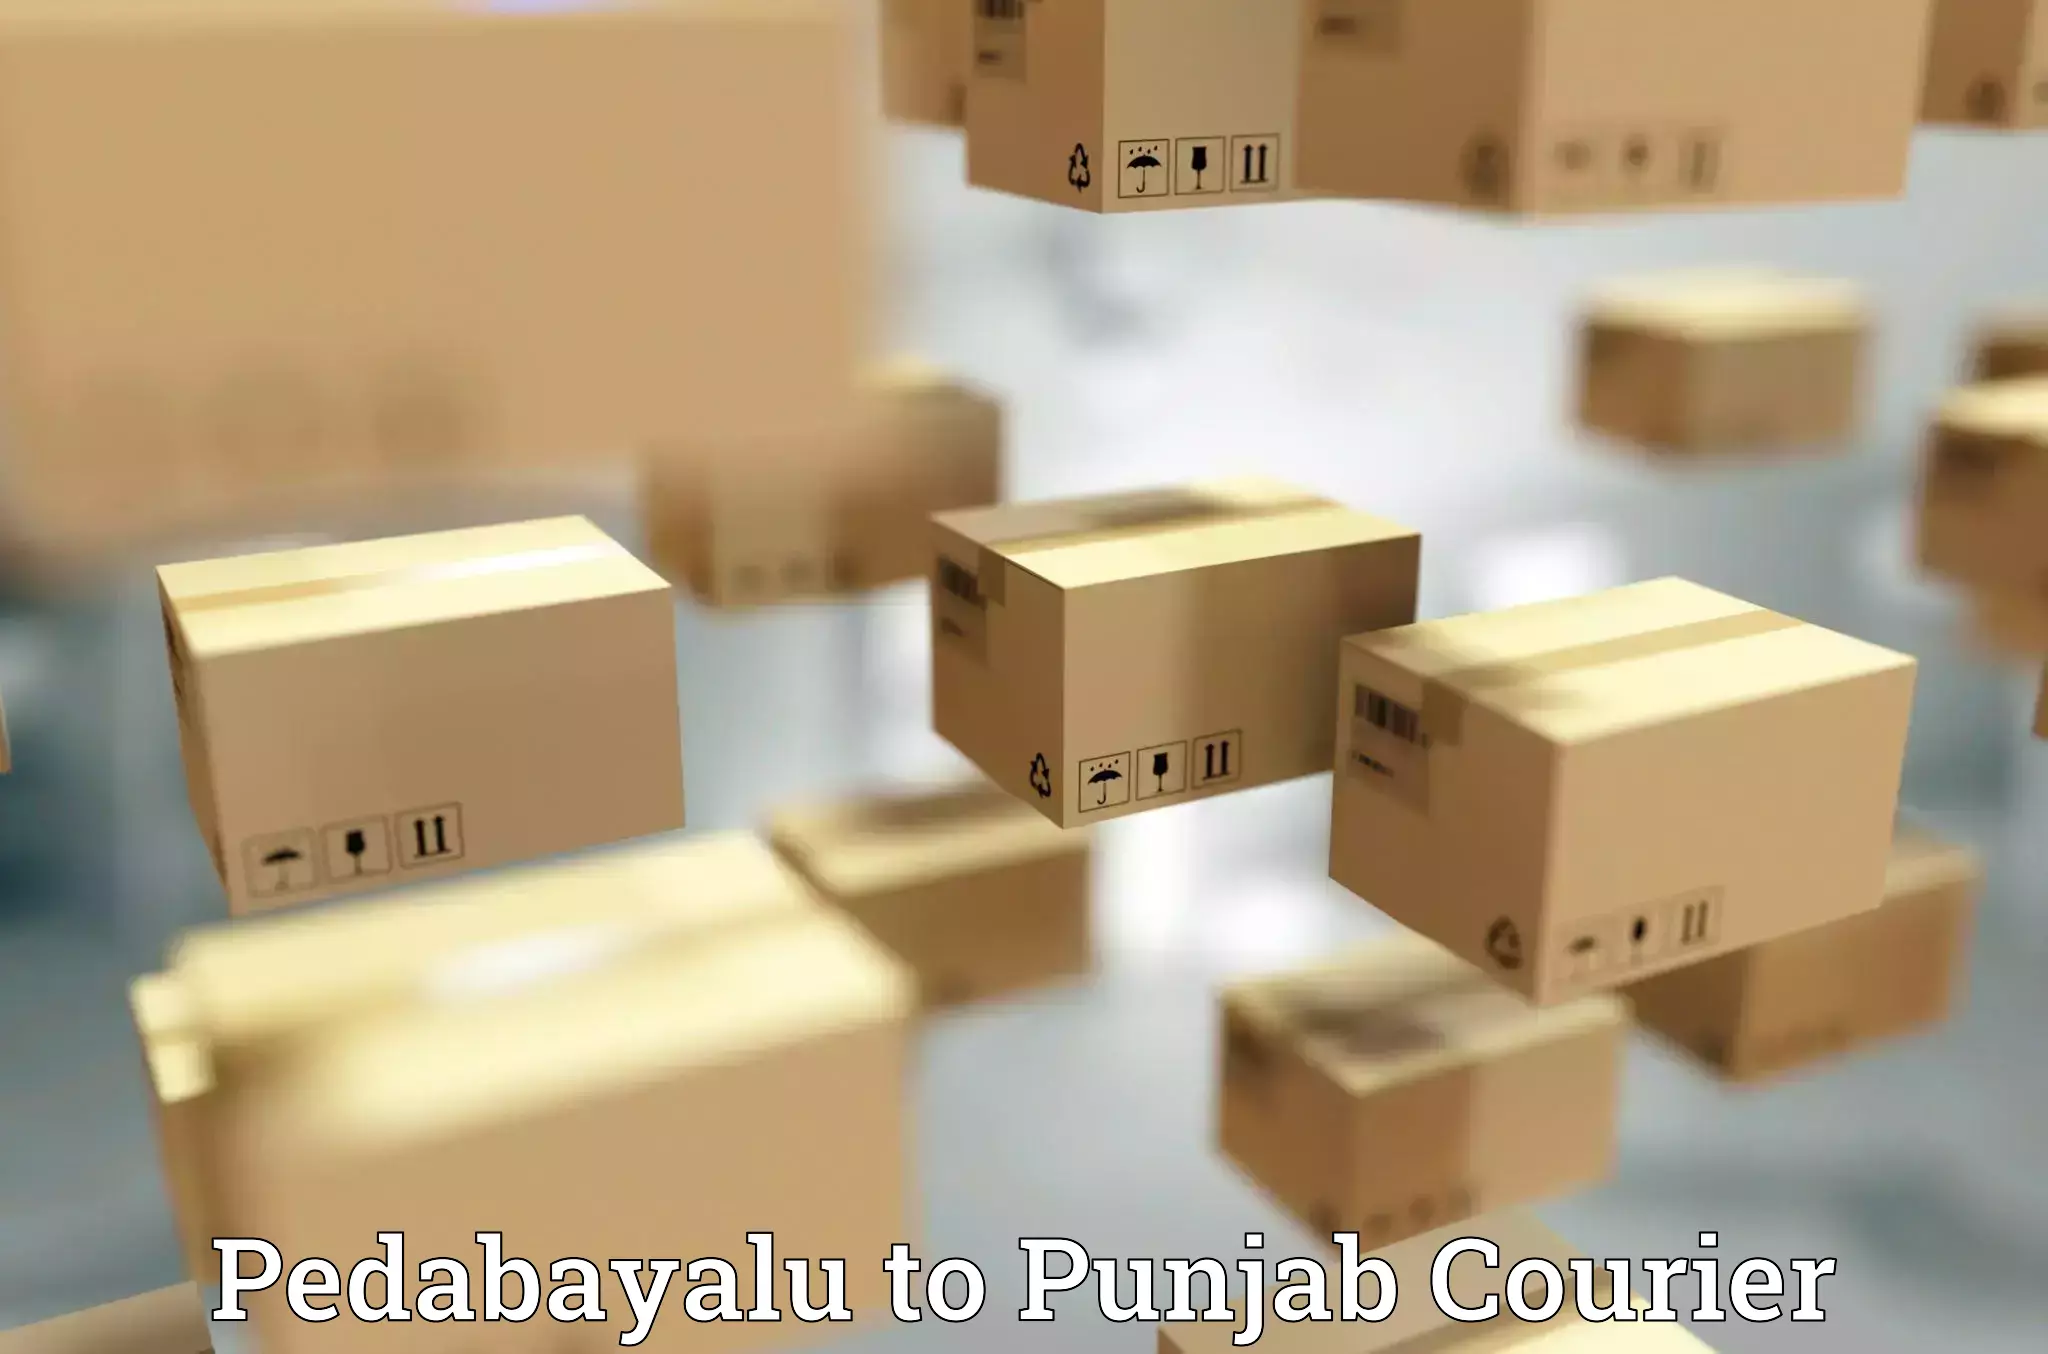 Urgent courier needs Pedabayalu to Jalalabad